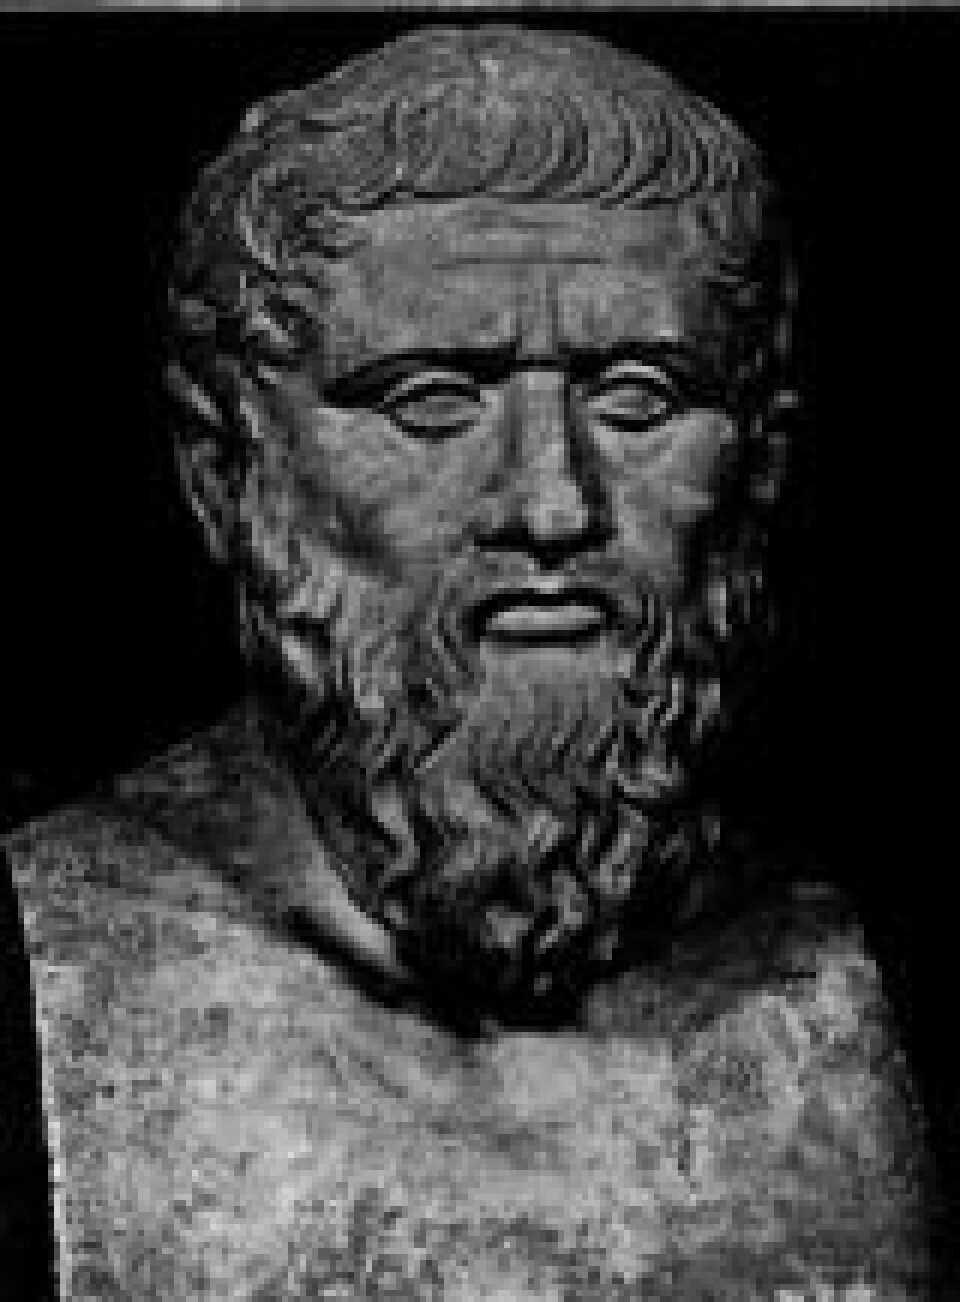 'Hvordan ville det gått med Platon og det gamle Hellas om perserne hadde vunnet ved Salamis? Og hvordan ville det ha gått med utviklingen av demokrati og vitenskap?'